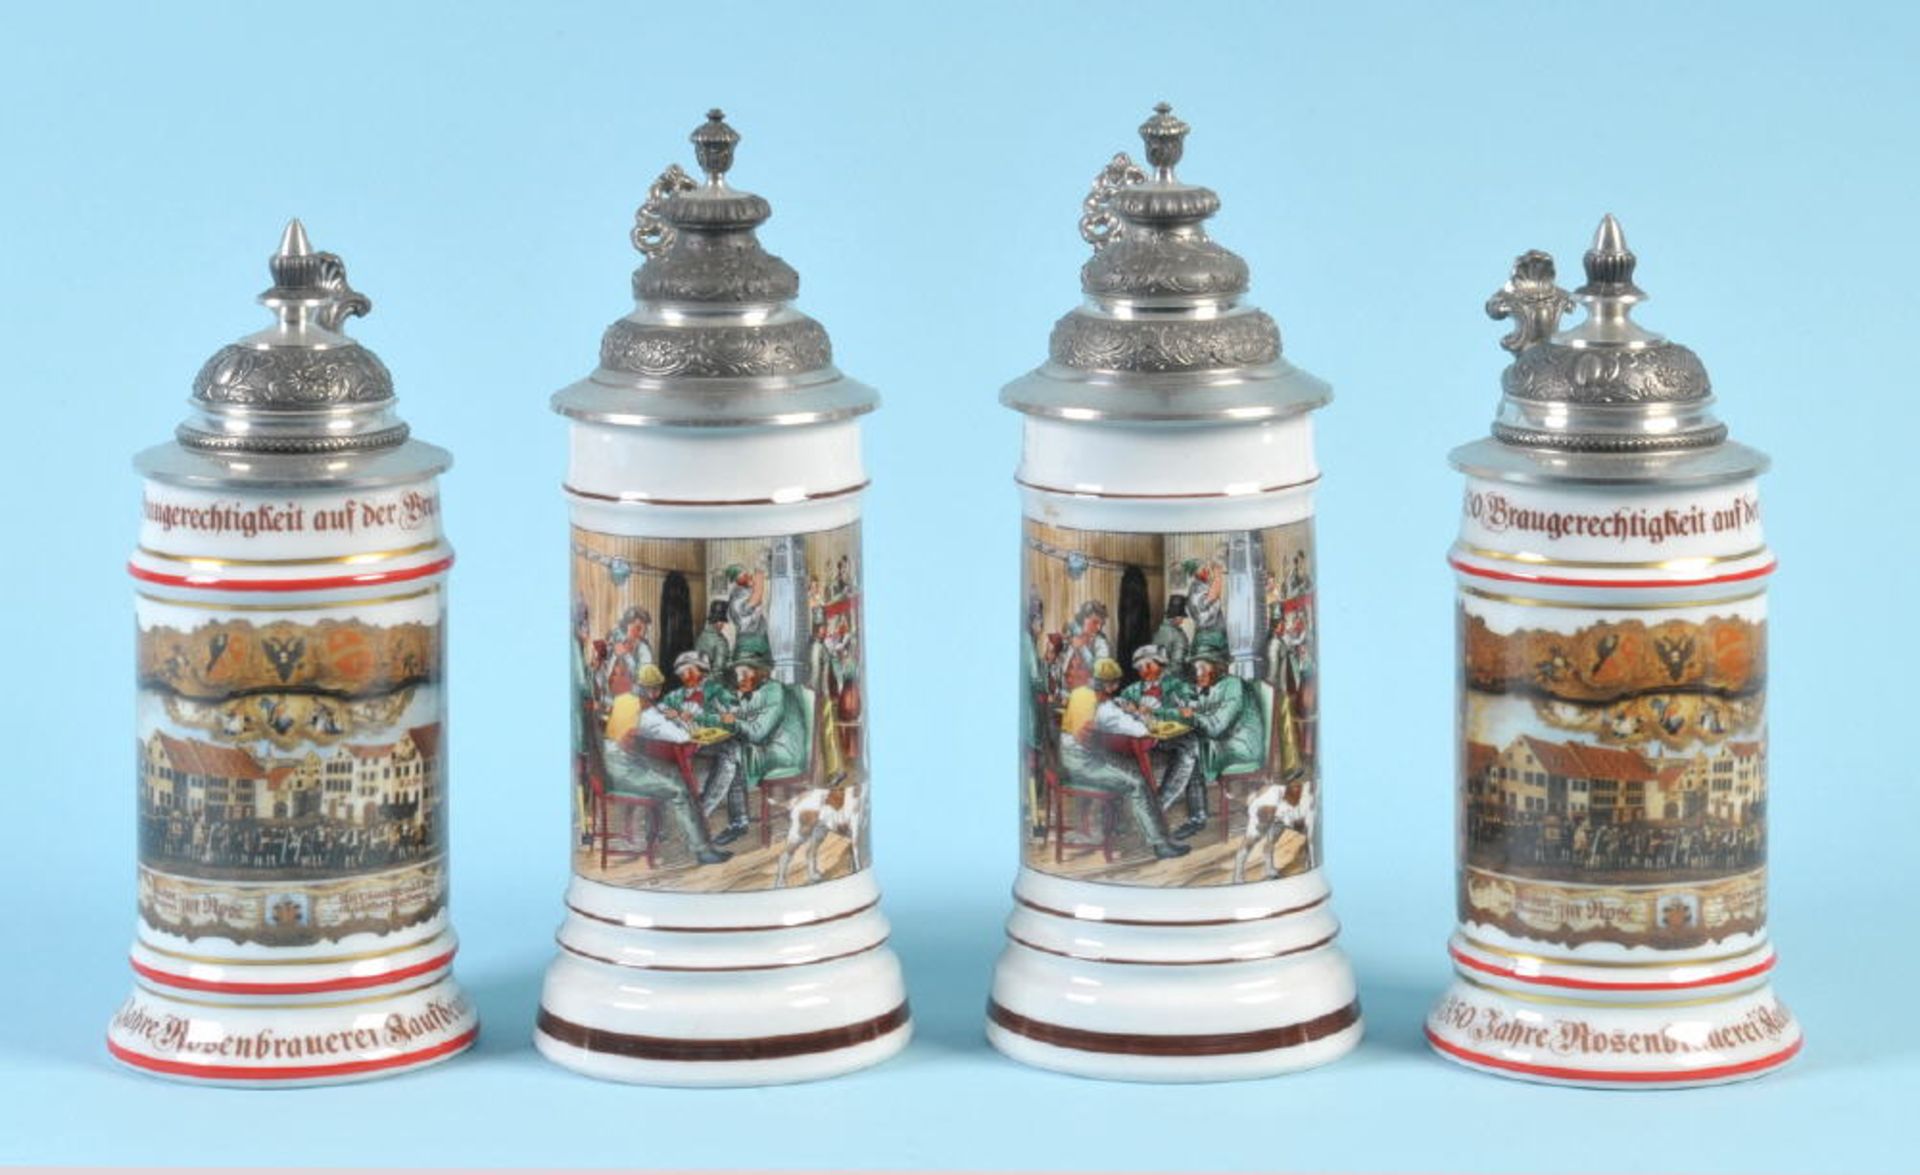 Bierkrüge mit Zinndeckeln, 4 StückPorzellan, je 2 mit farbigem Motiv "Wirtshausszene" u. "350